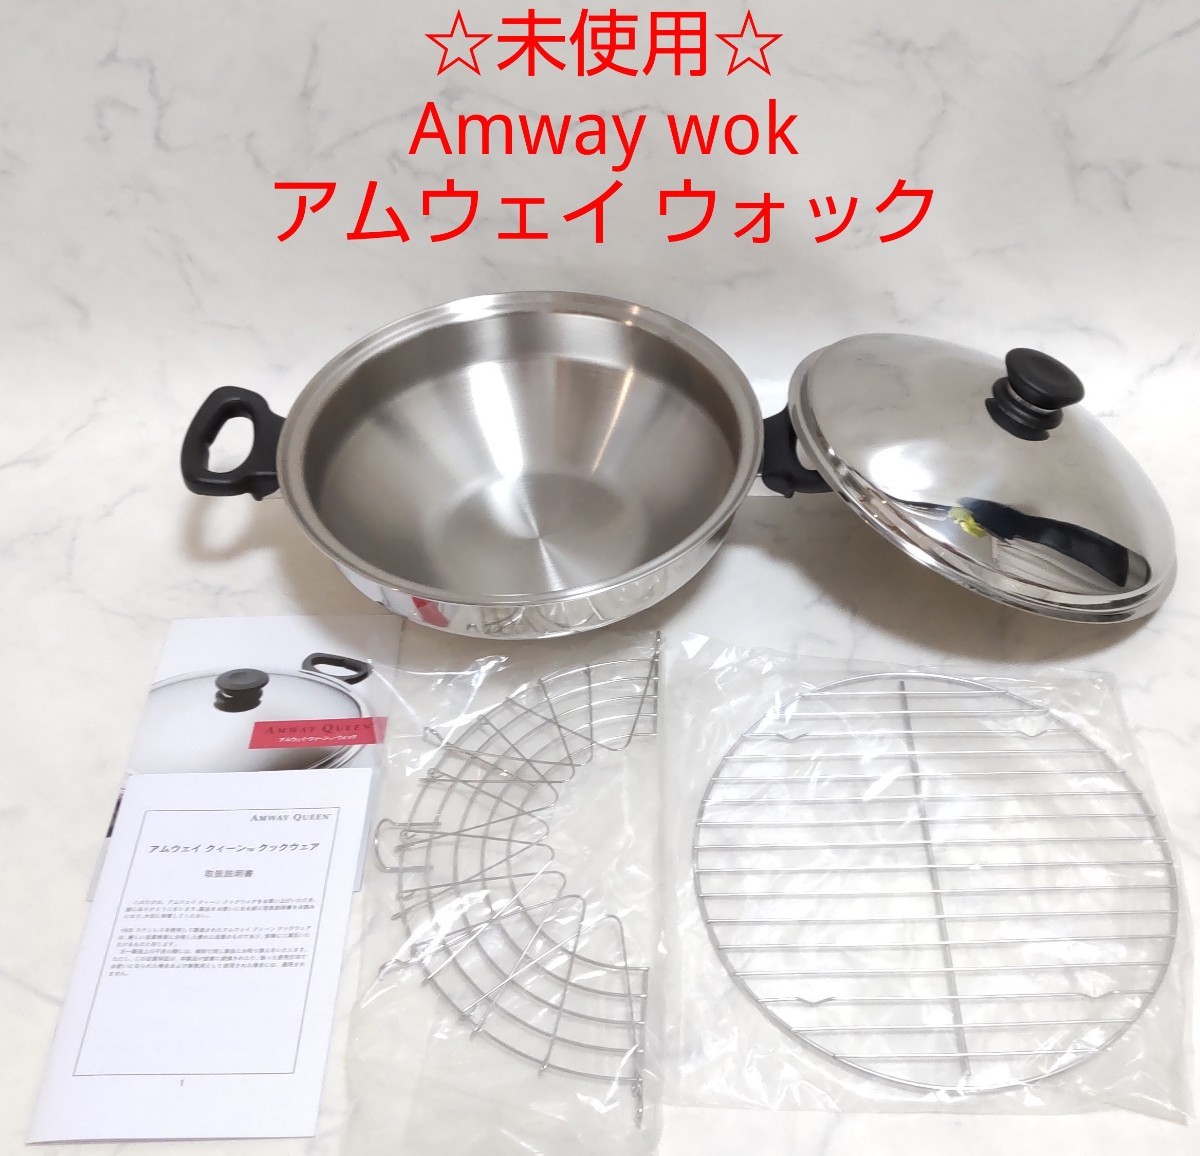 アムウェイ ウォック 鍋 - 調理器具